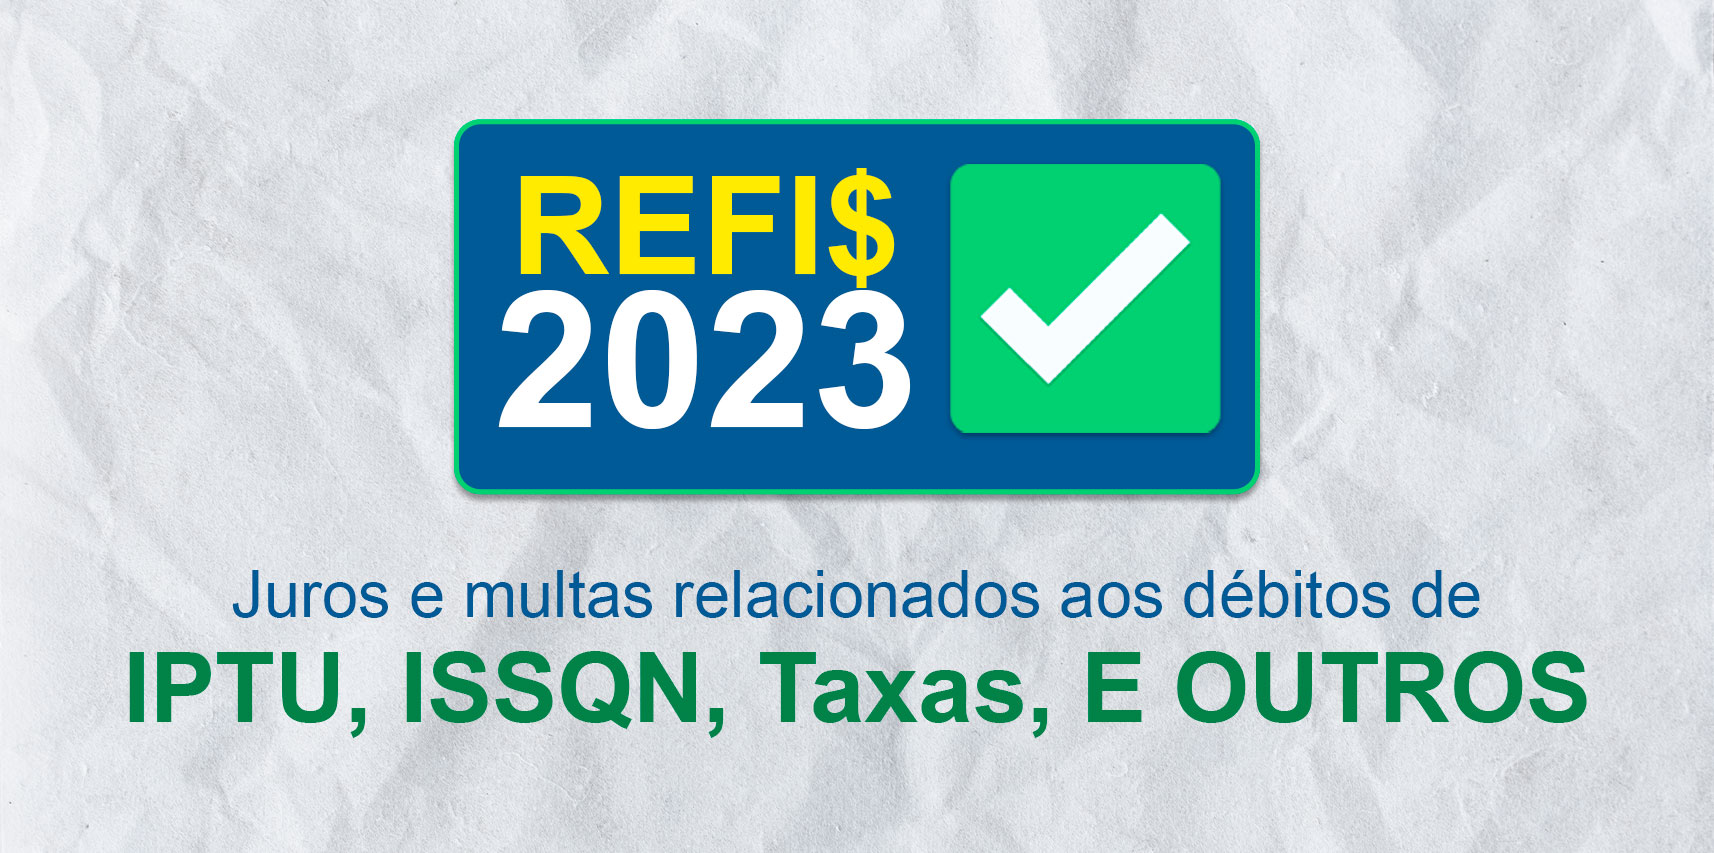 Prefeitura de Vargem Alta anuncia REFIS 2023 com até 90% de desconto em juros e multas